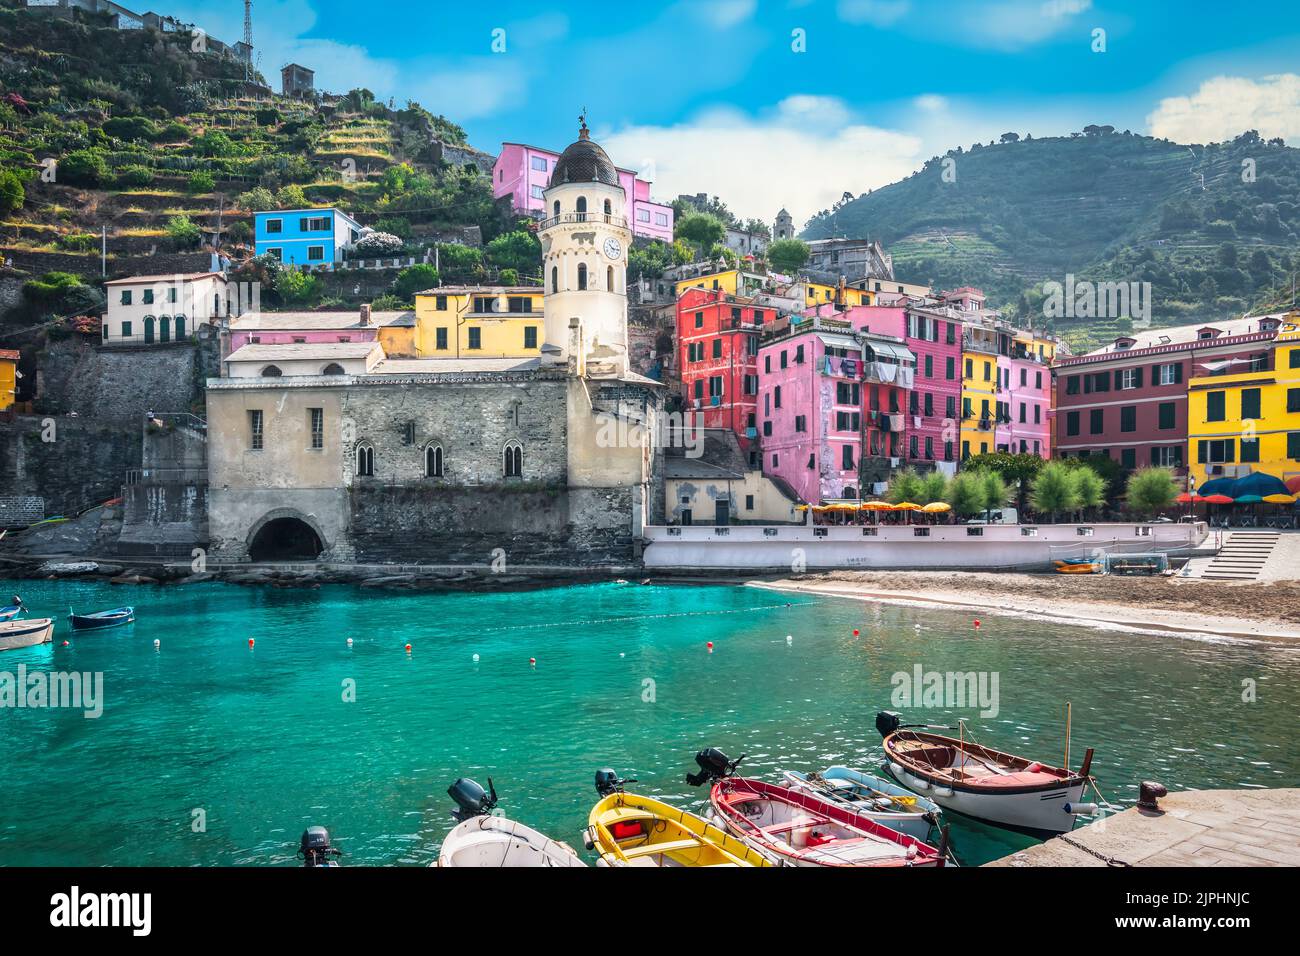 Dorf Vernazza, Cinque Terre, Italien. Wunderschöne Hafenbucht mit bunten Gebäuden an der Küste. Stockfoto